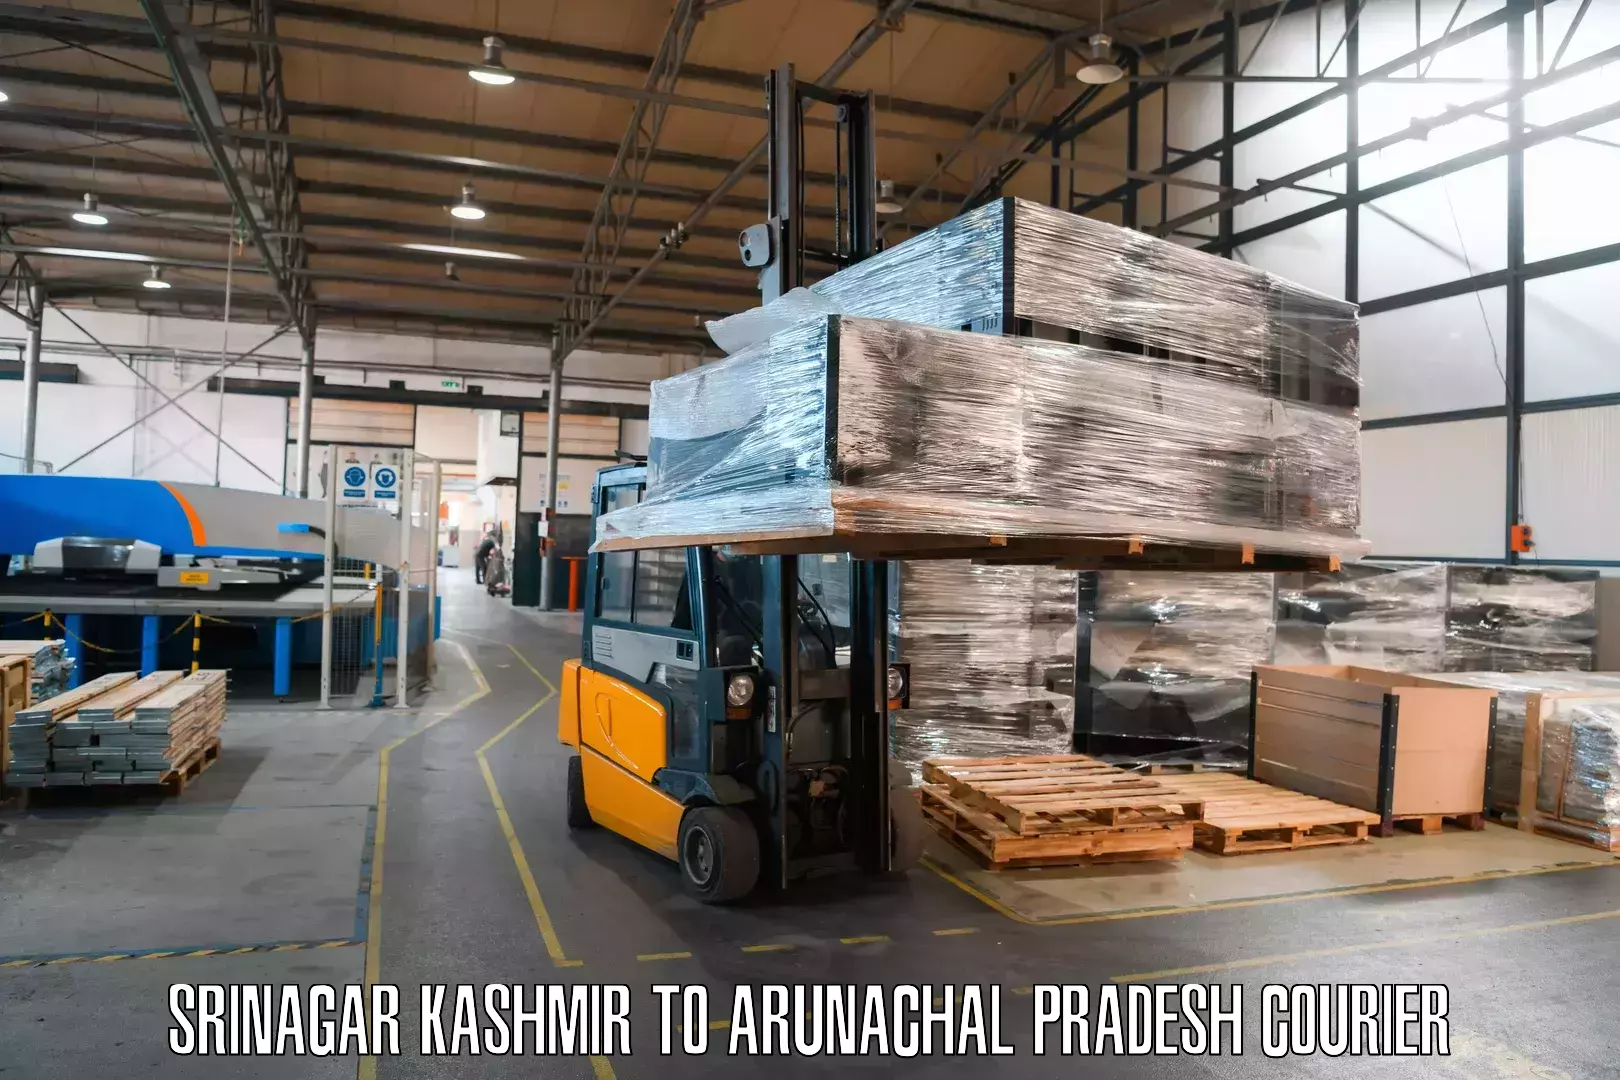 Special handling courier Srinagar Kashmir to Arunachal Pradesh